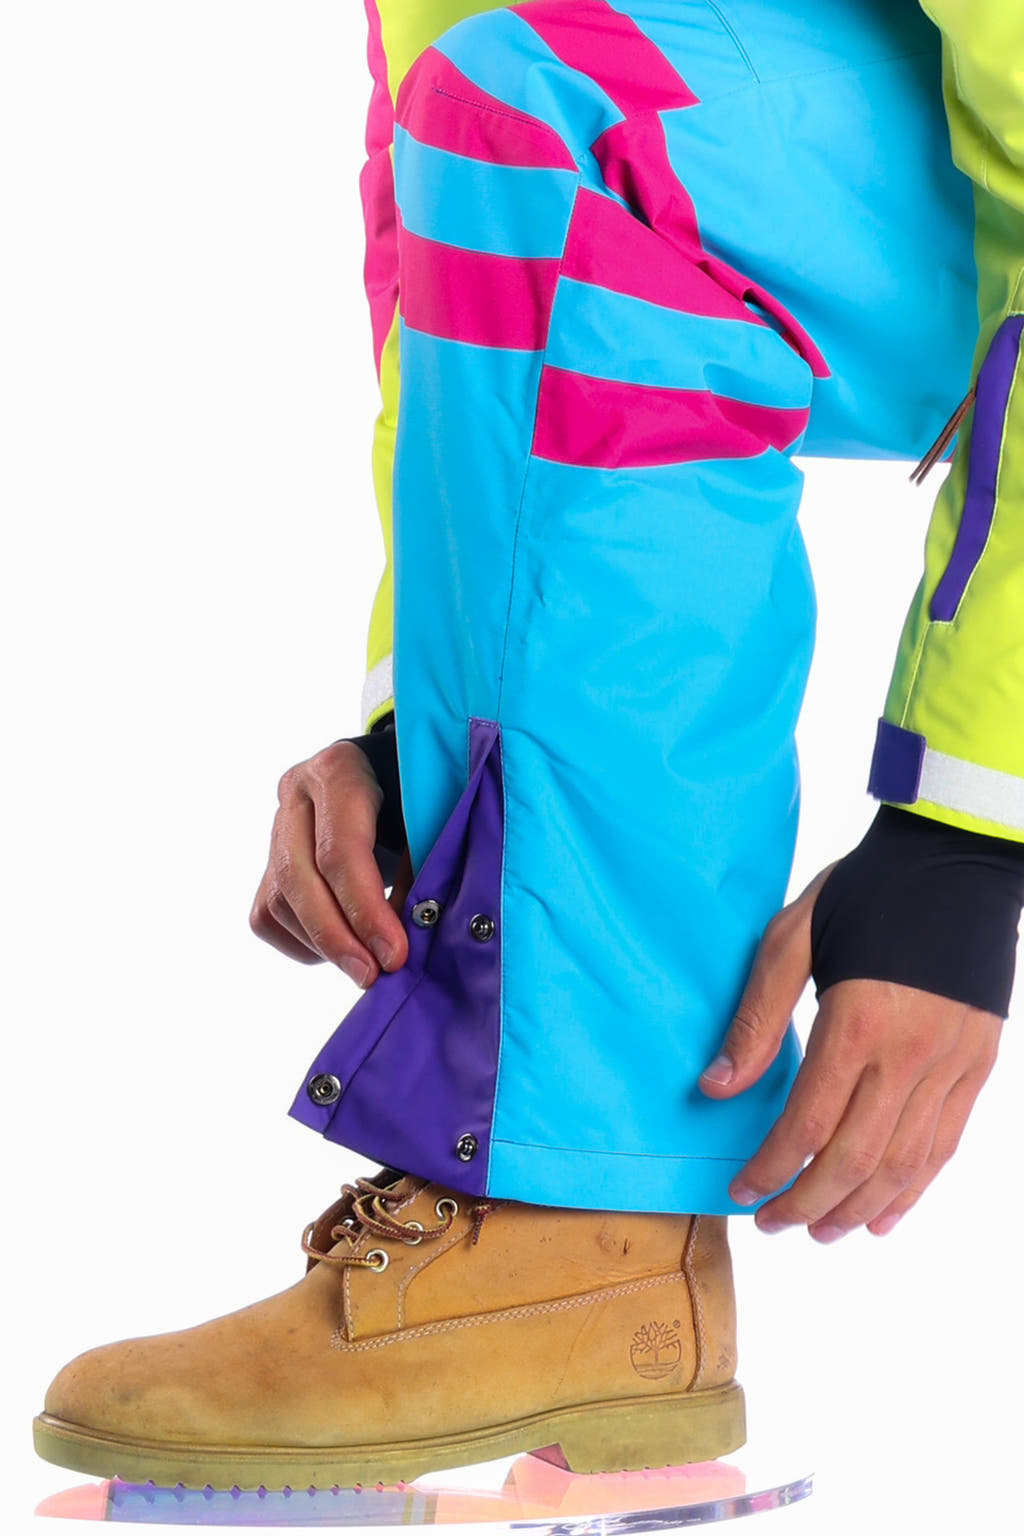 neon retro ski suit